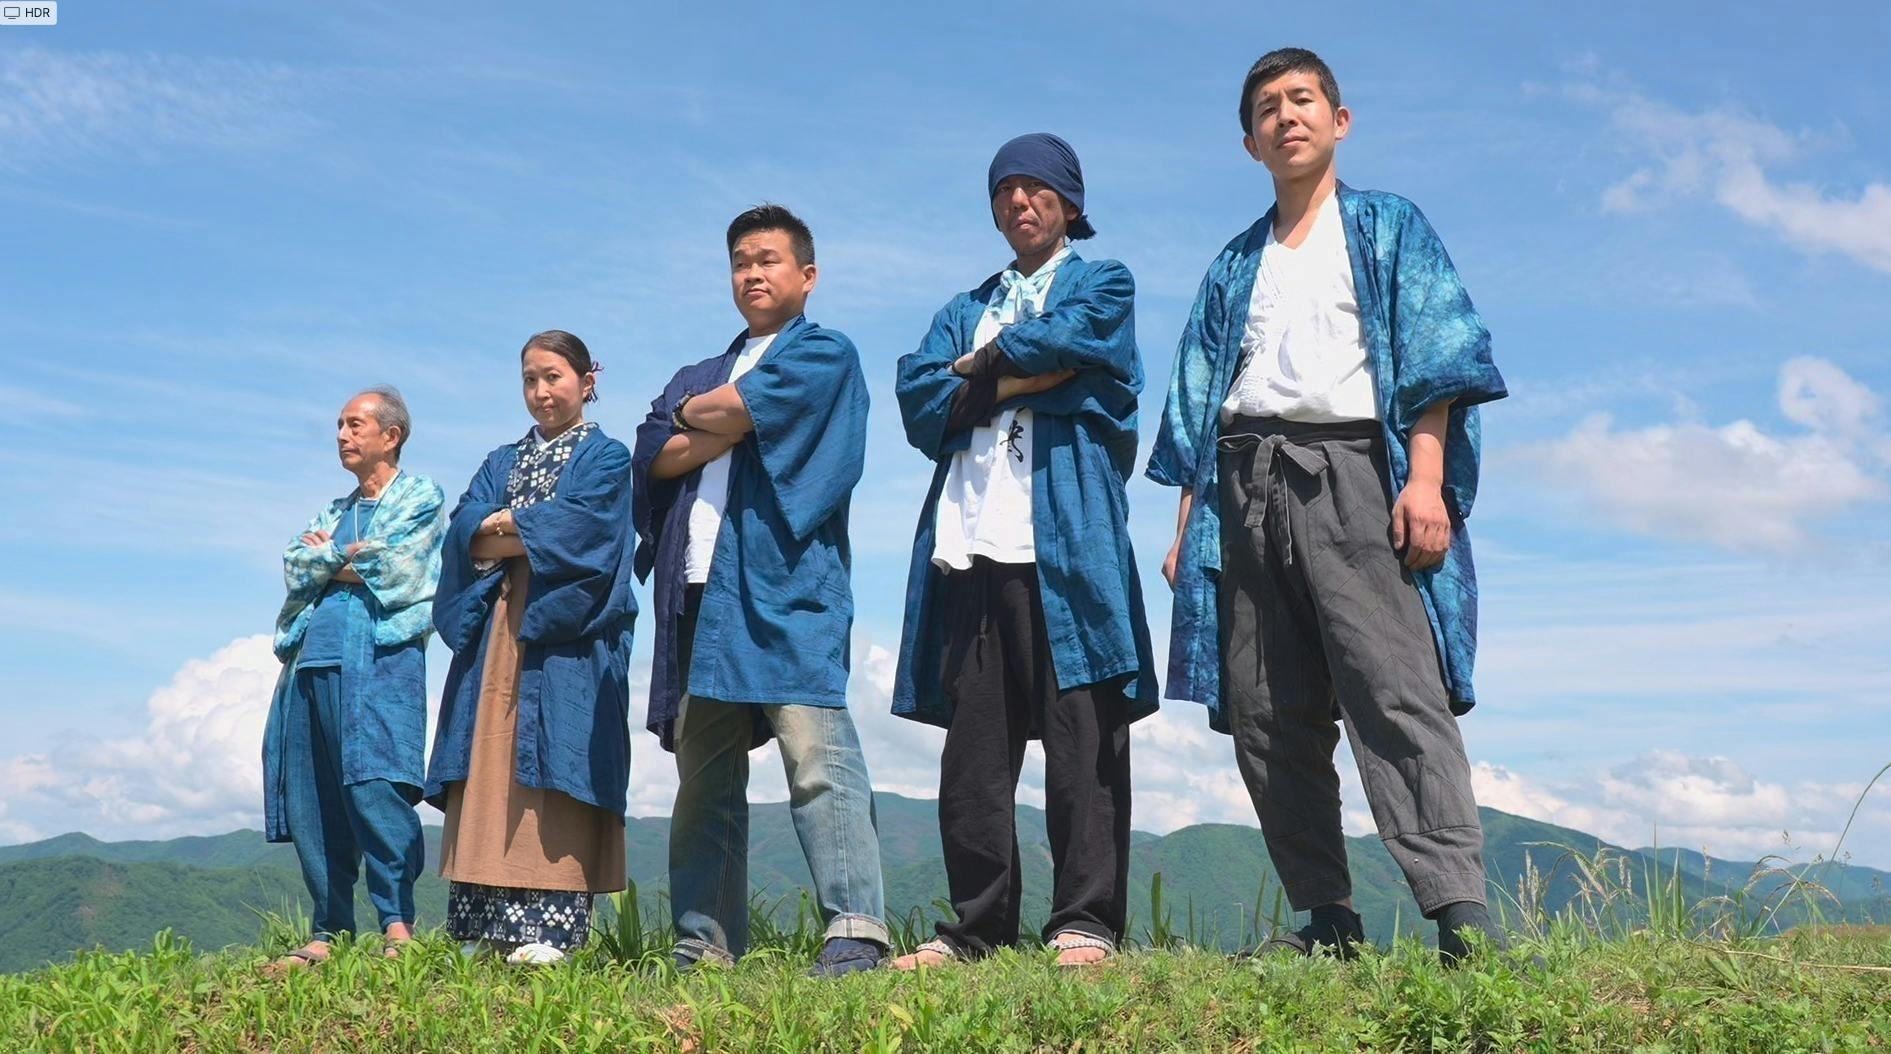 日本の伝統文化を受け継ぐ、志ある職人の“ドキュメンタリー映画”を作り